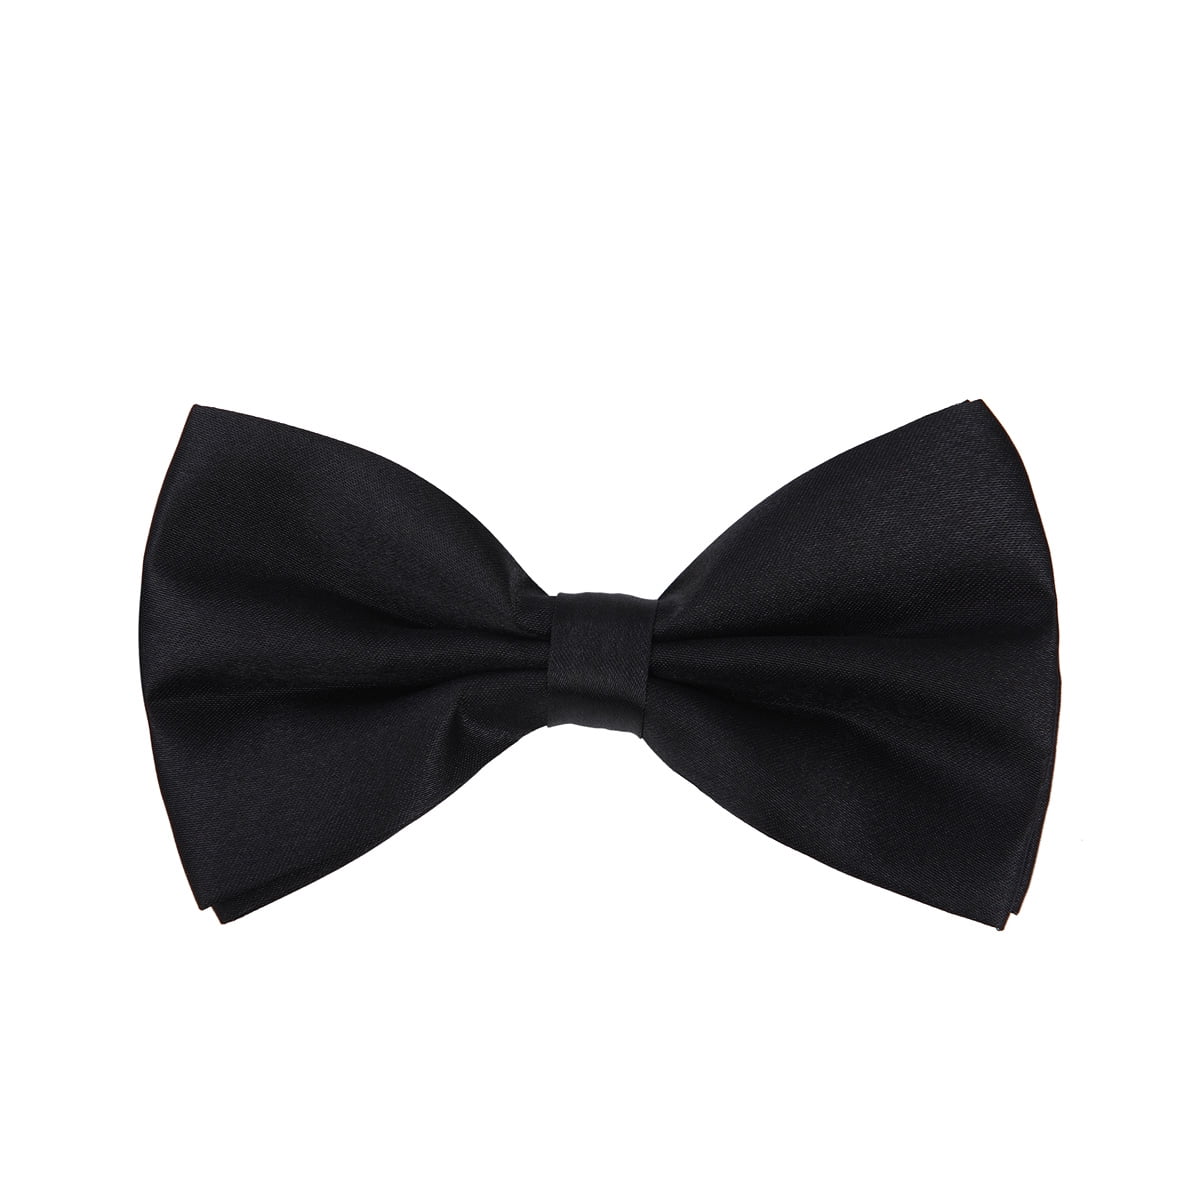 Classic 35Color Fashion Men's Adjustable Tuxedo Bowtie Wedding Bow Tie Necktie